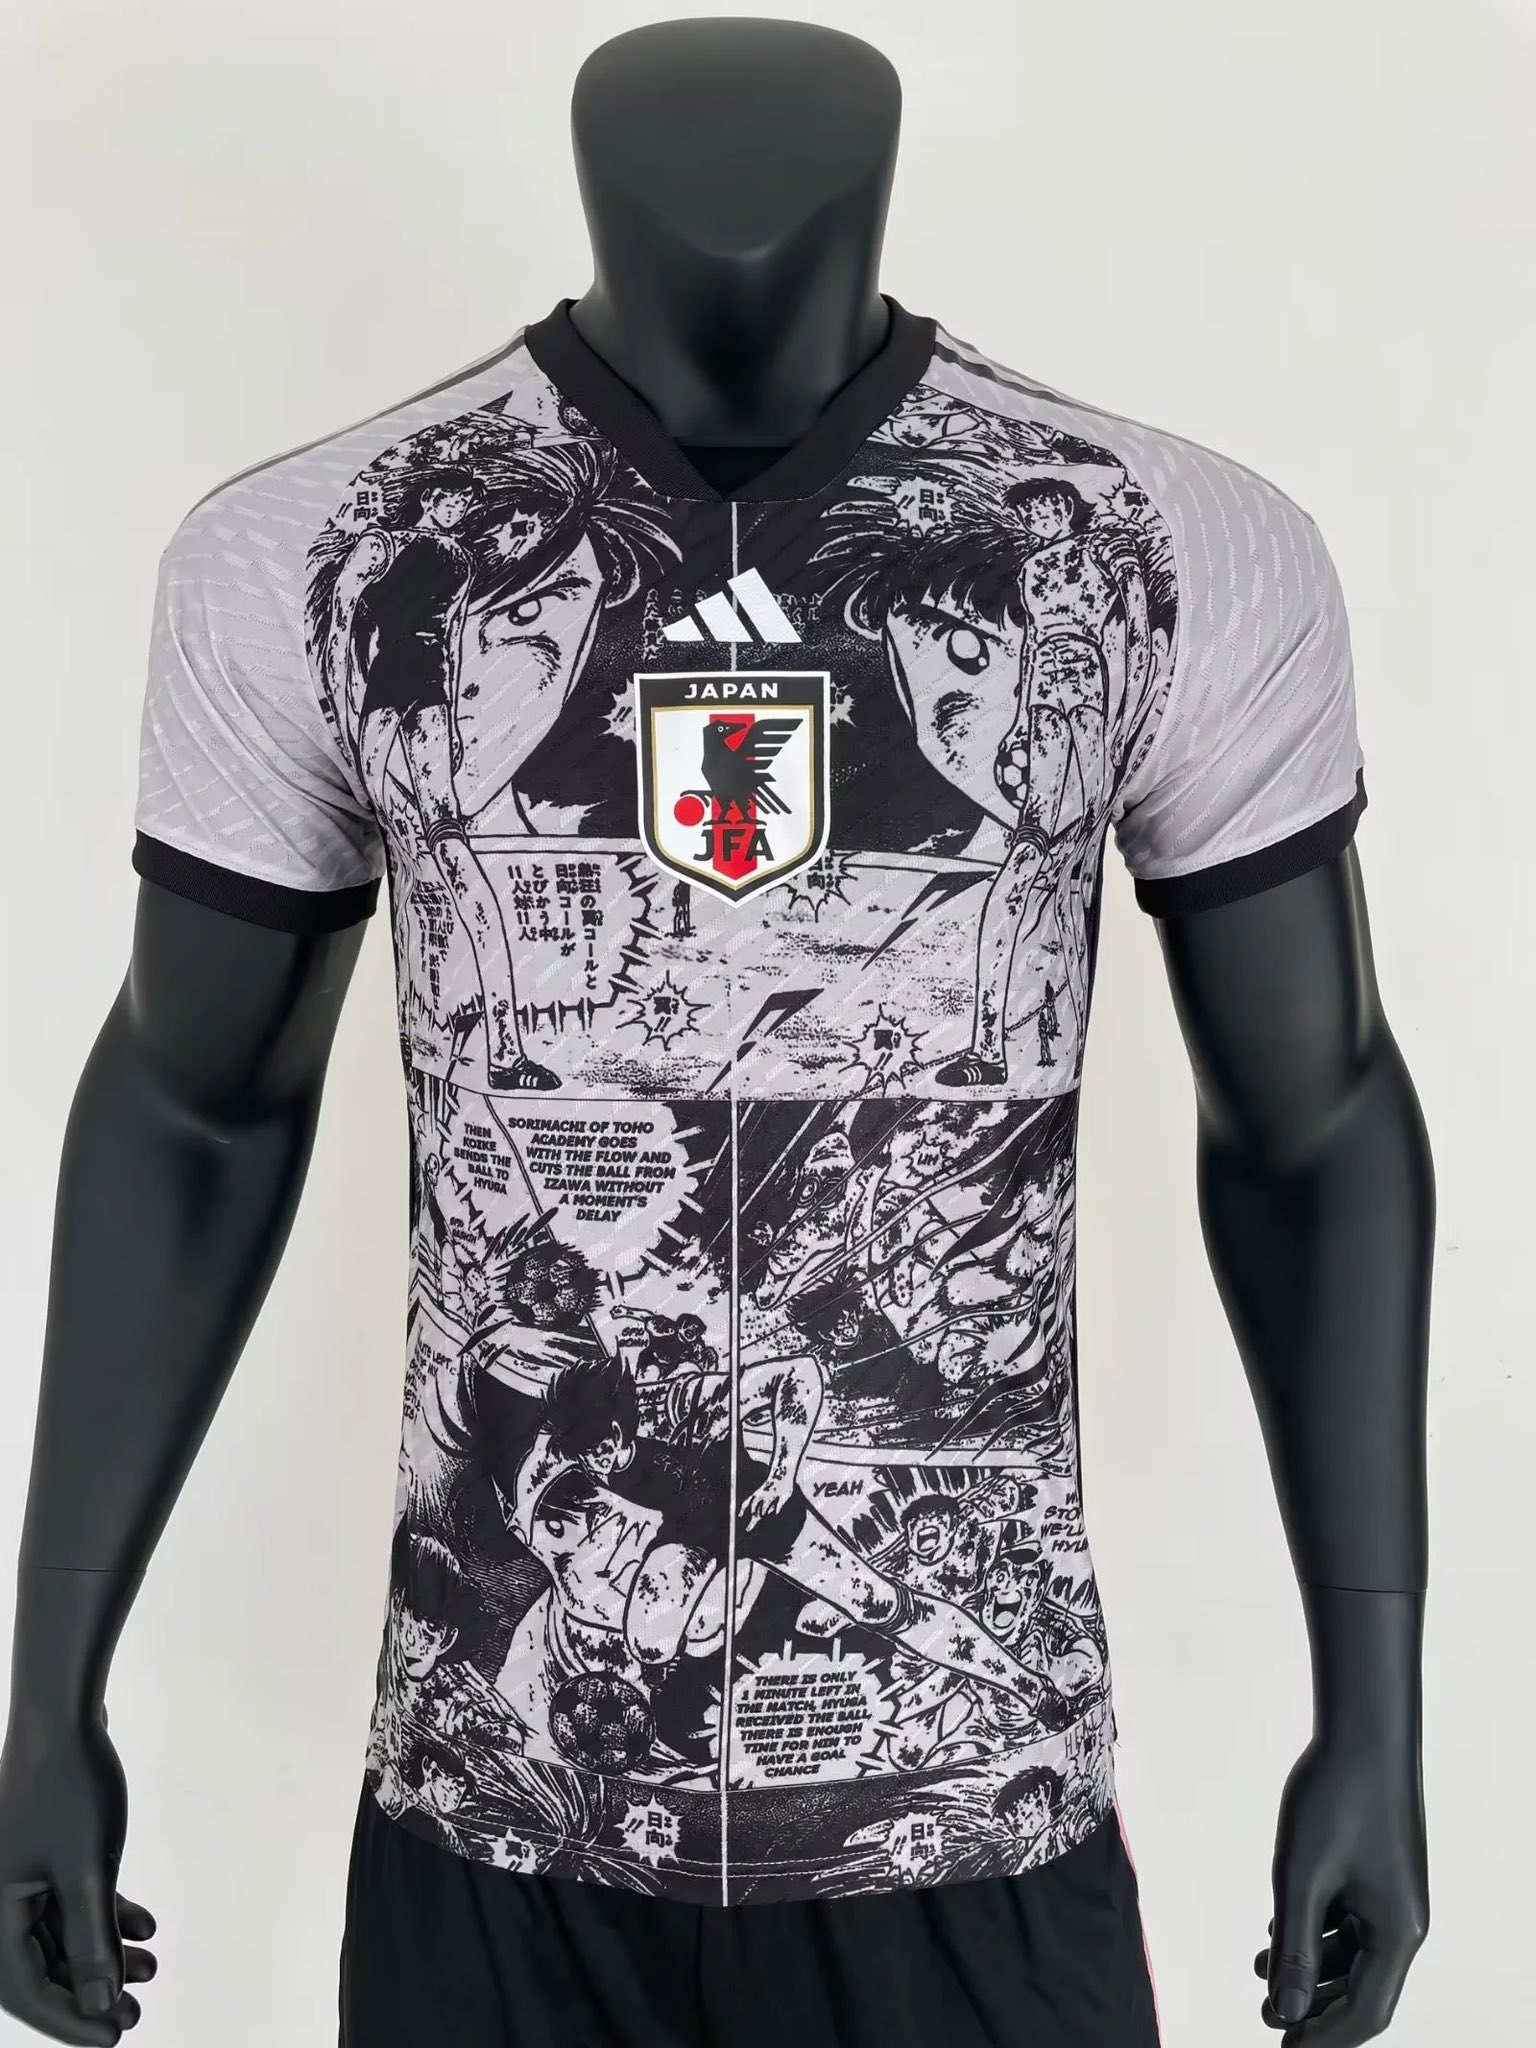 FutbolJersey77 on X: Disponibles la nueva camiseta especial de